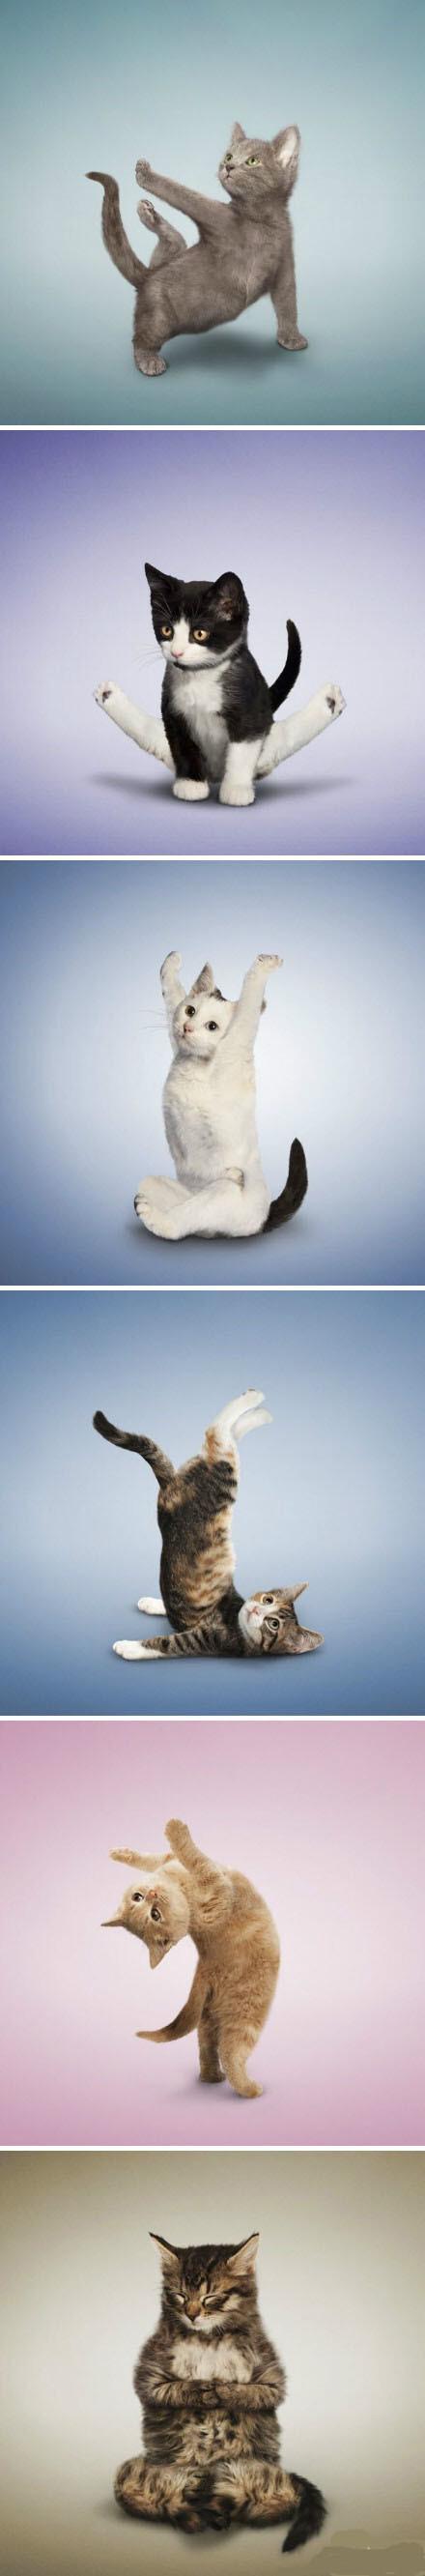 怪不得猫那么优雅,原来是因为练瑜伽